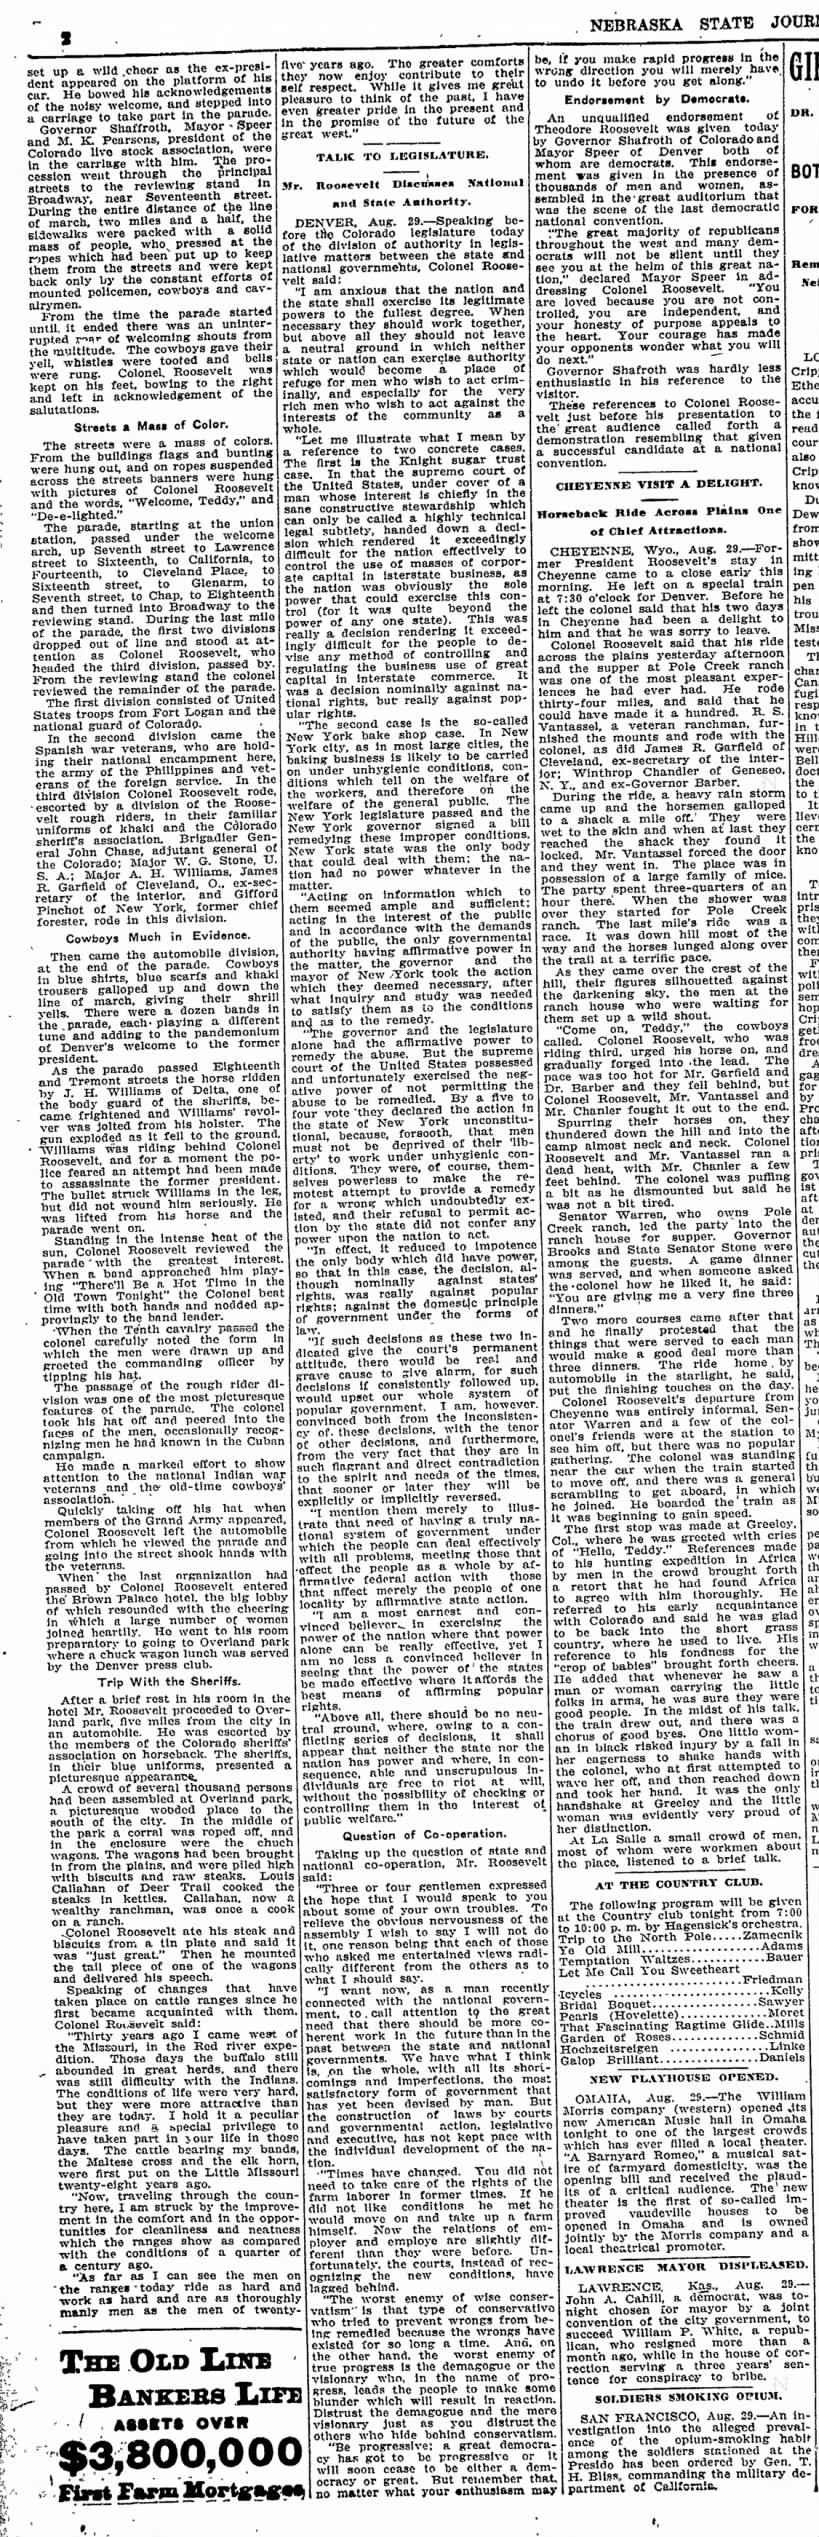 Nebraska State Journal
(Lincoln, Nebraska)
30 August 1910, p2 (cont)